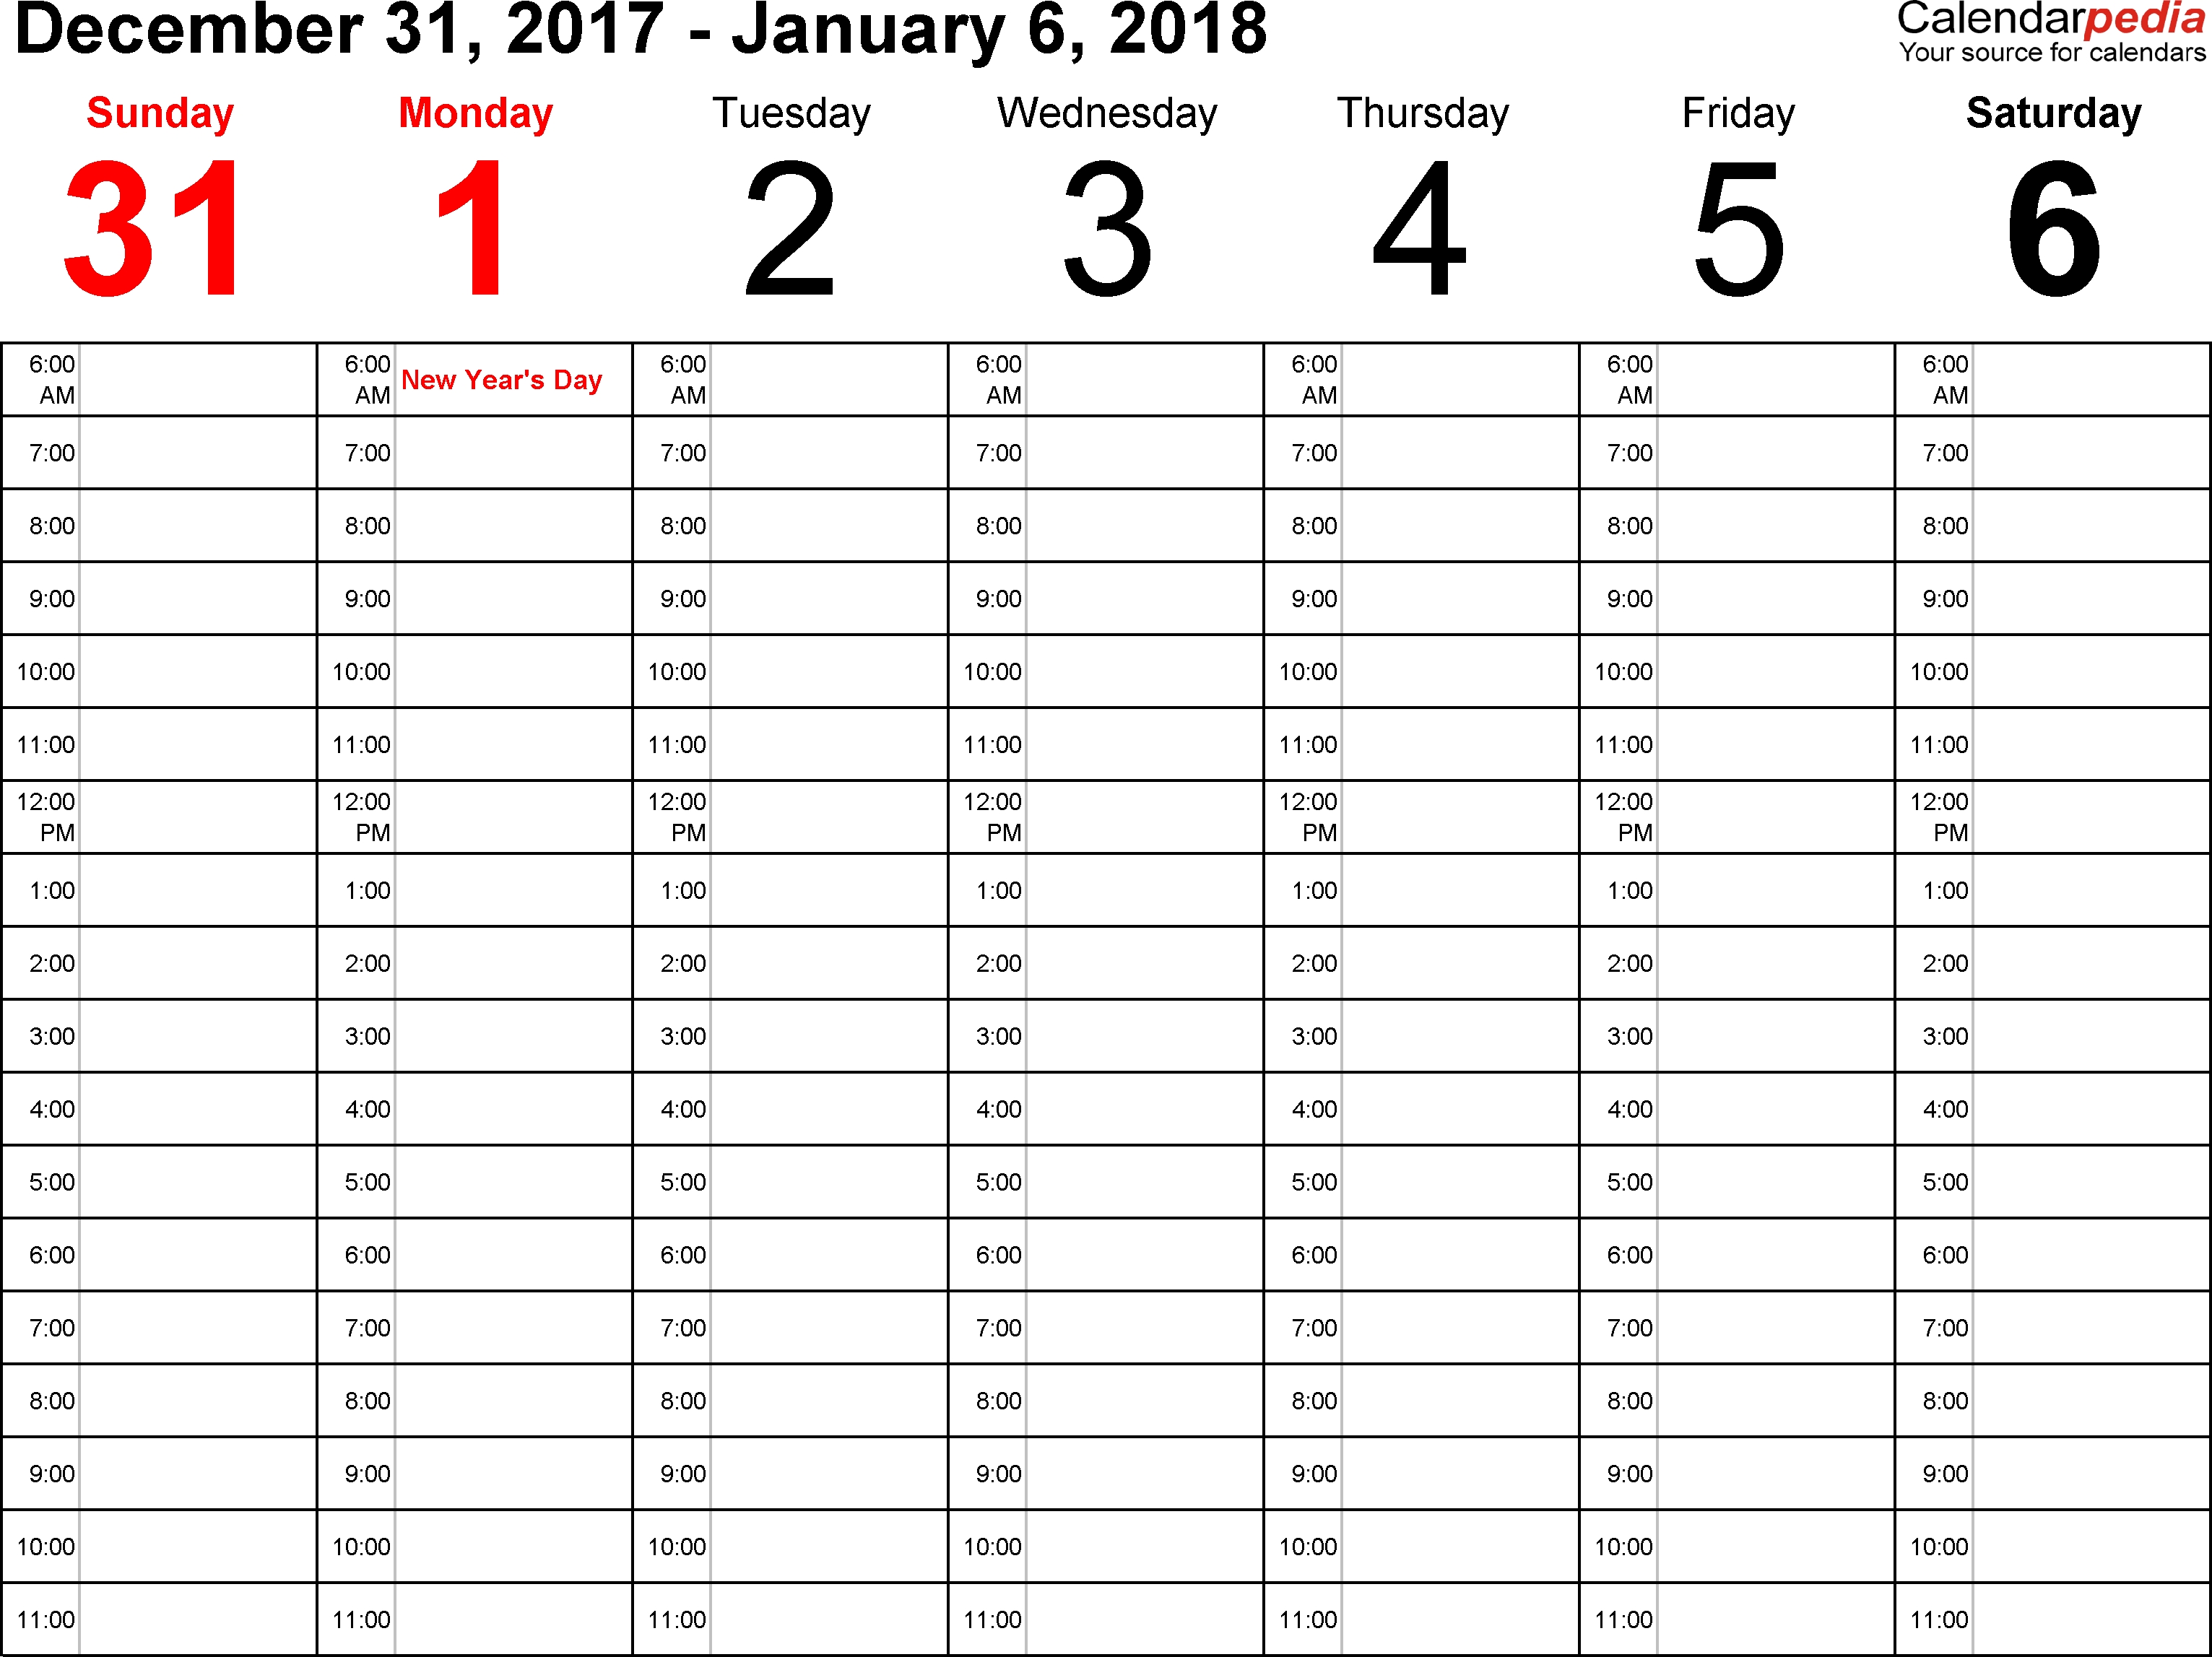 Weekly Calendar 2018 For Word - 12 Free Printable Templates-1 Week Blank Calendar Printable